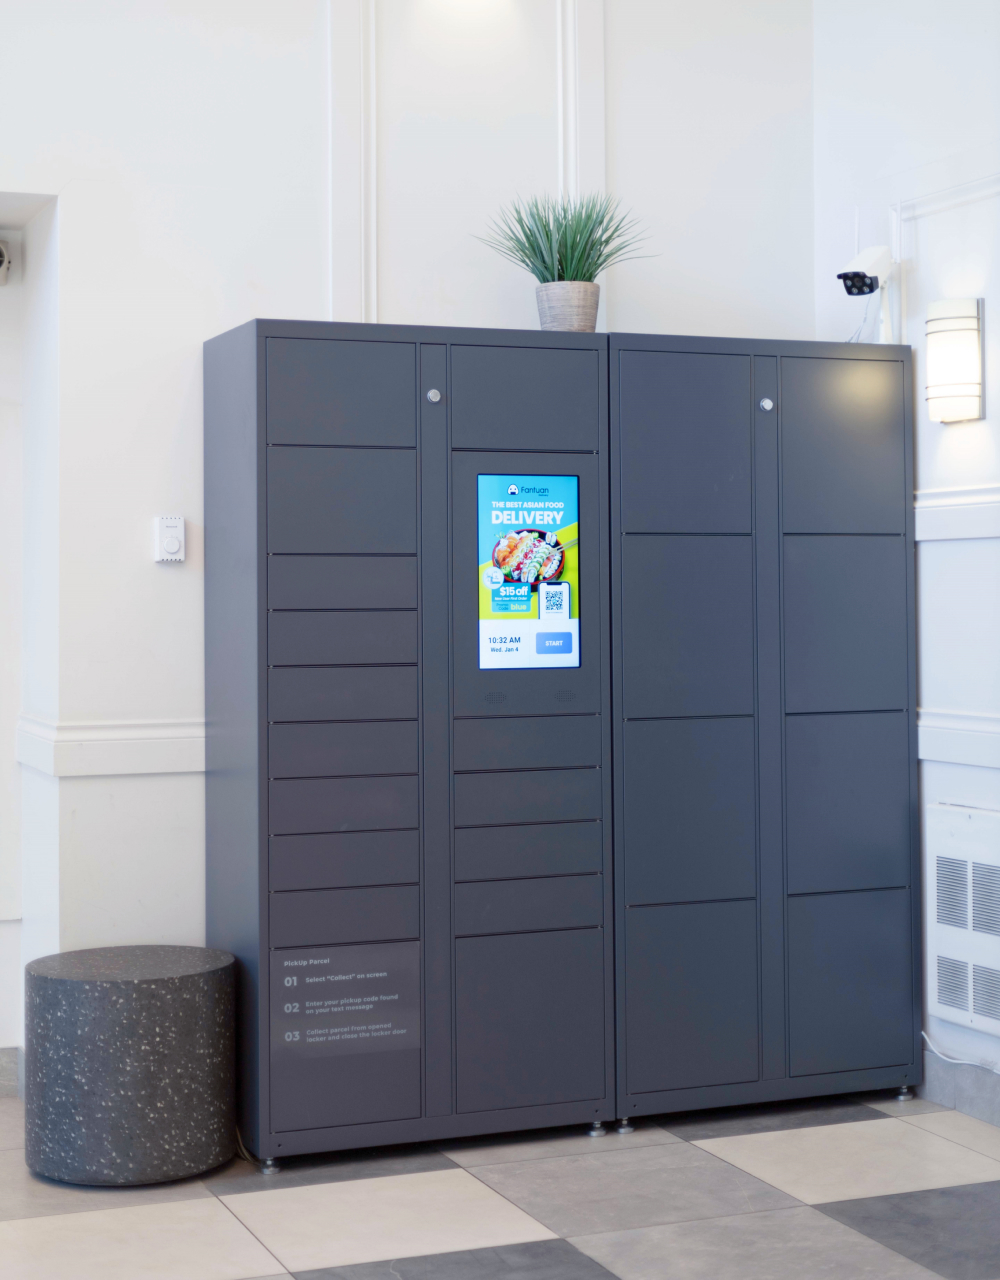 BlueBox locker in lobby with BlueAds screen